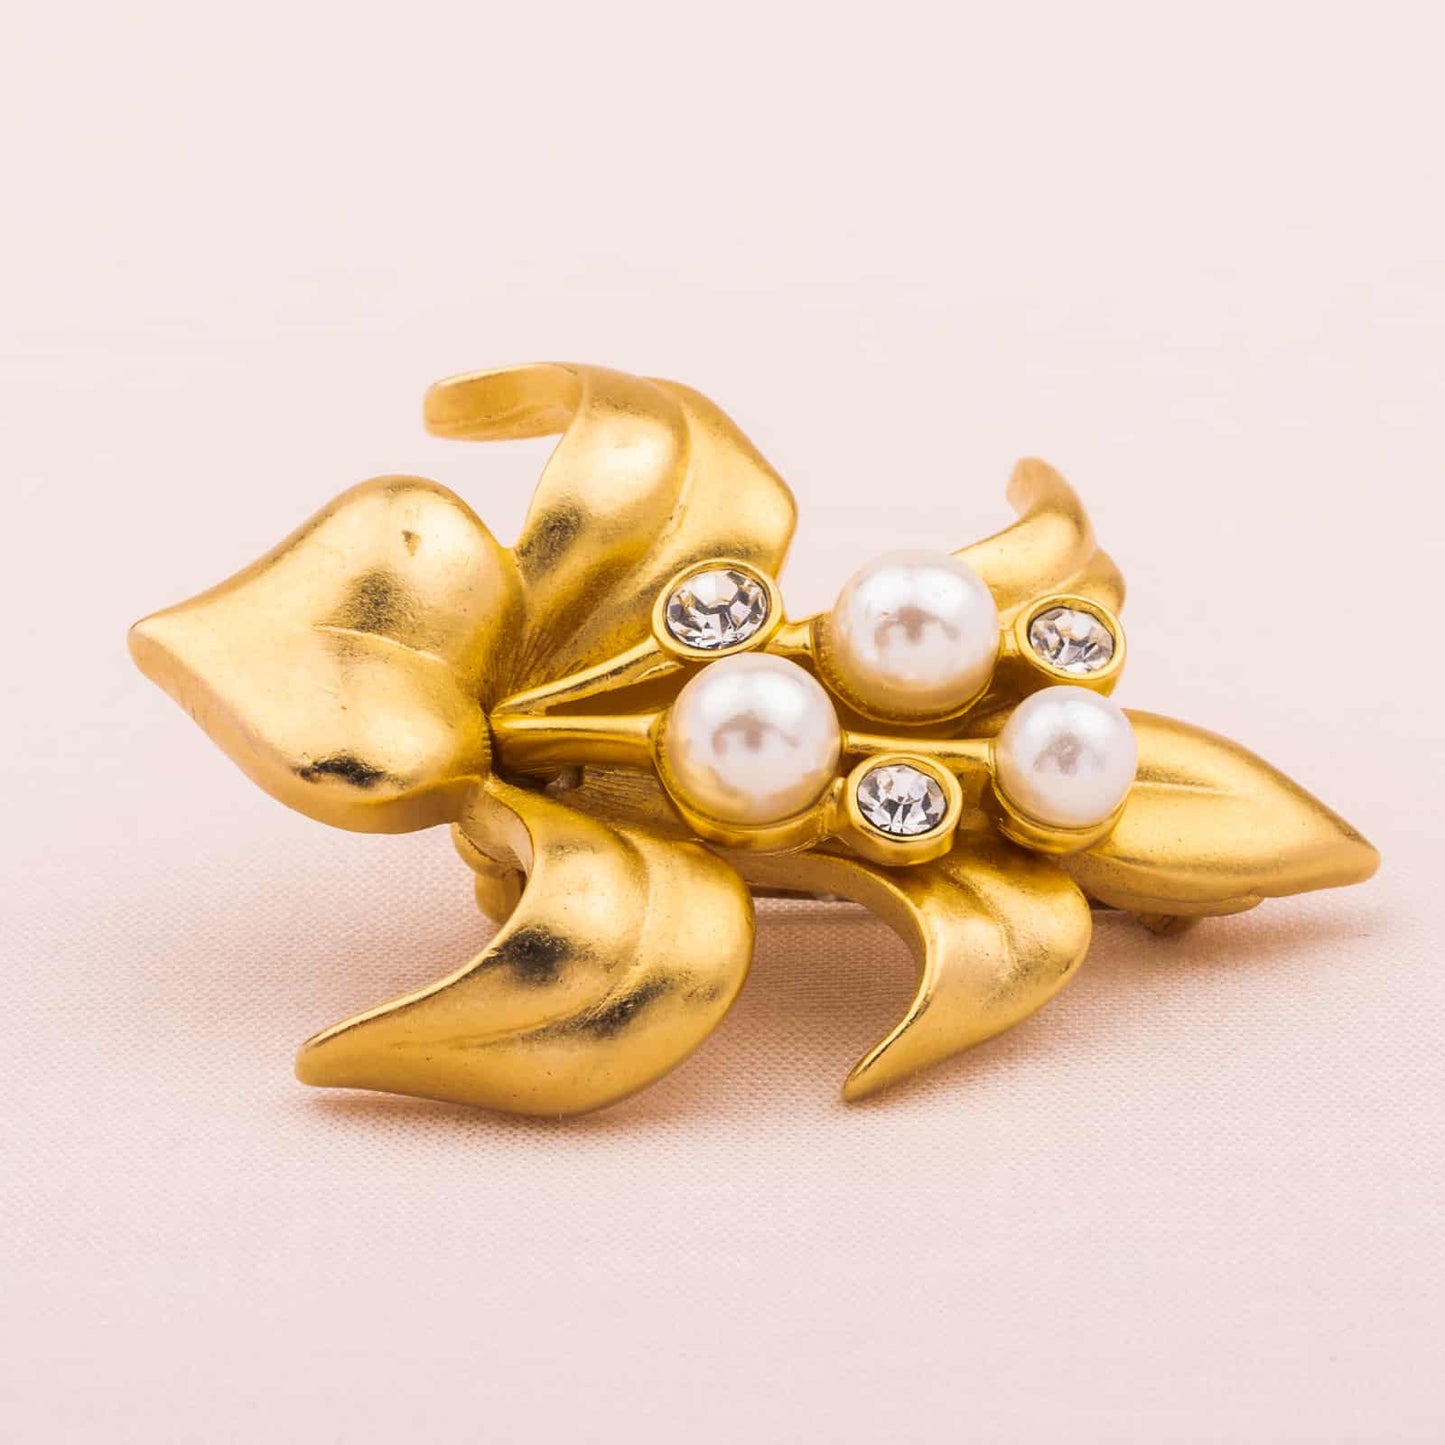 Swarovski-Blumen-Brosche-Vergoldet-Perlen-Kristalle